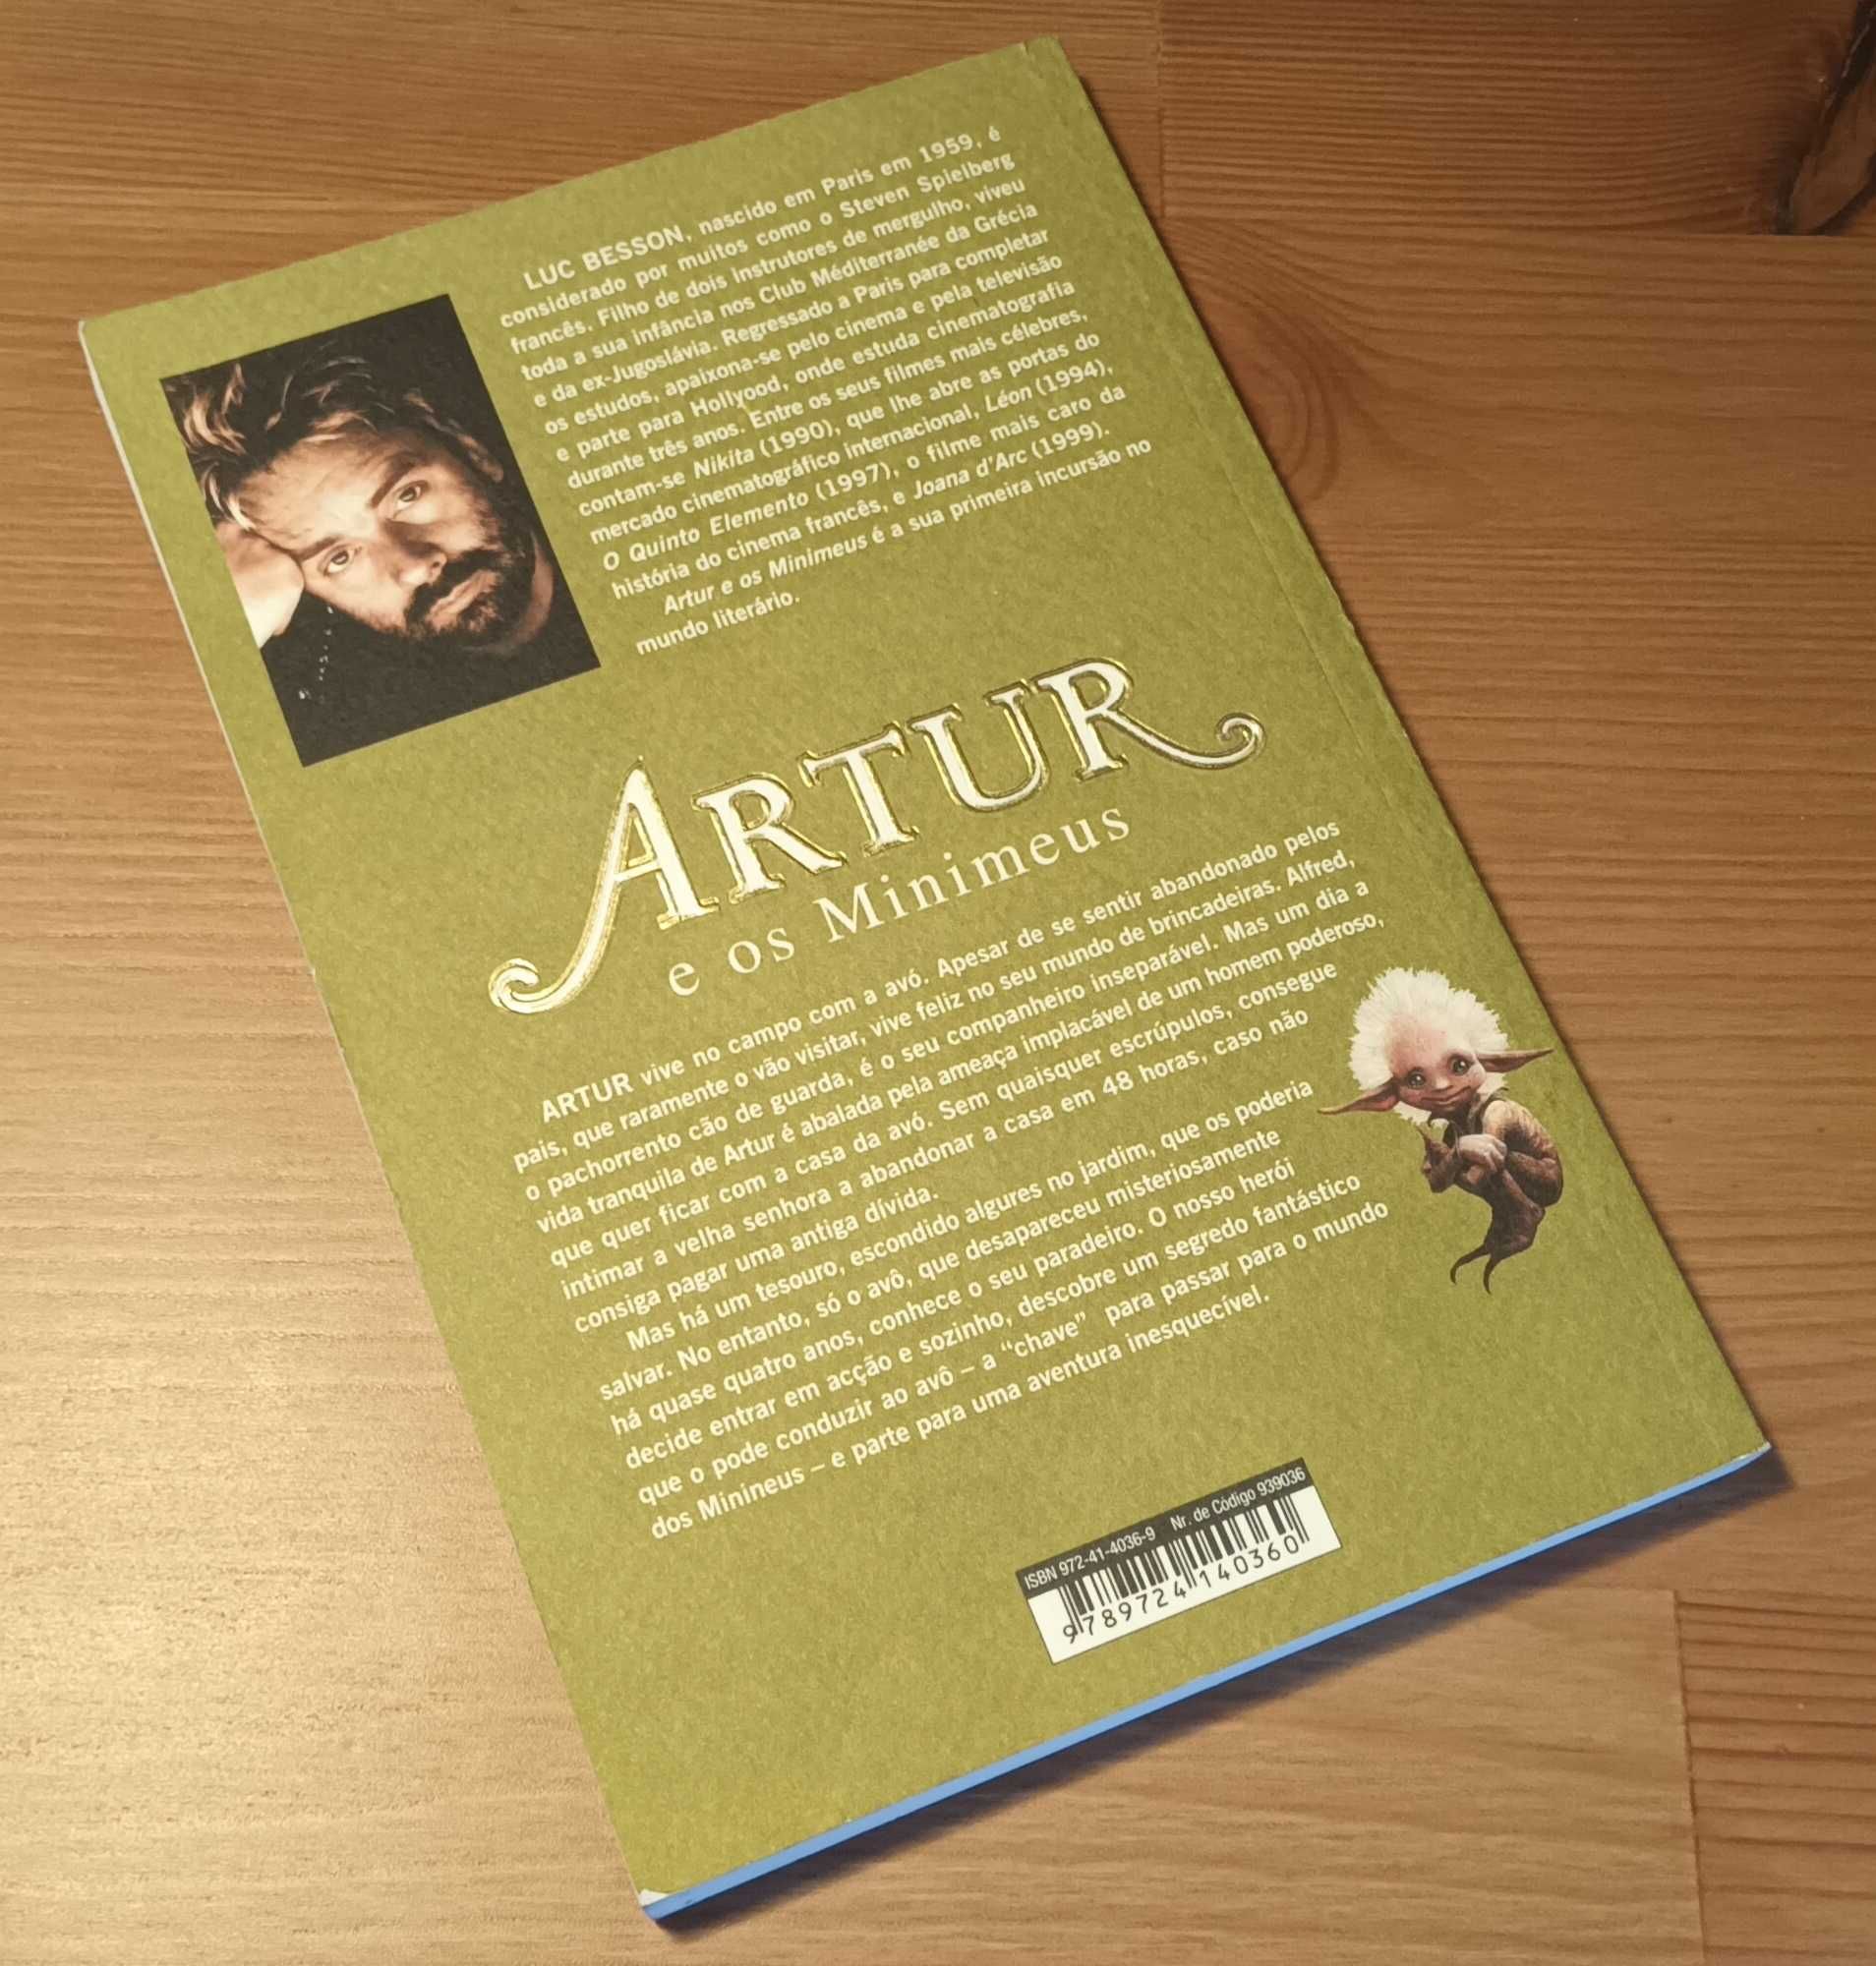 Livro "Artur e os minimeus" de Luc Besson